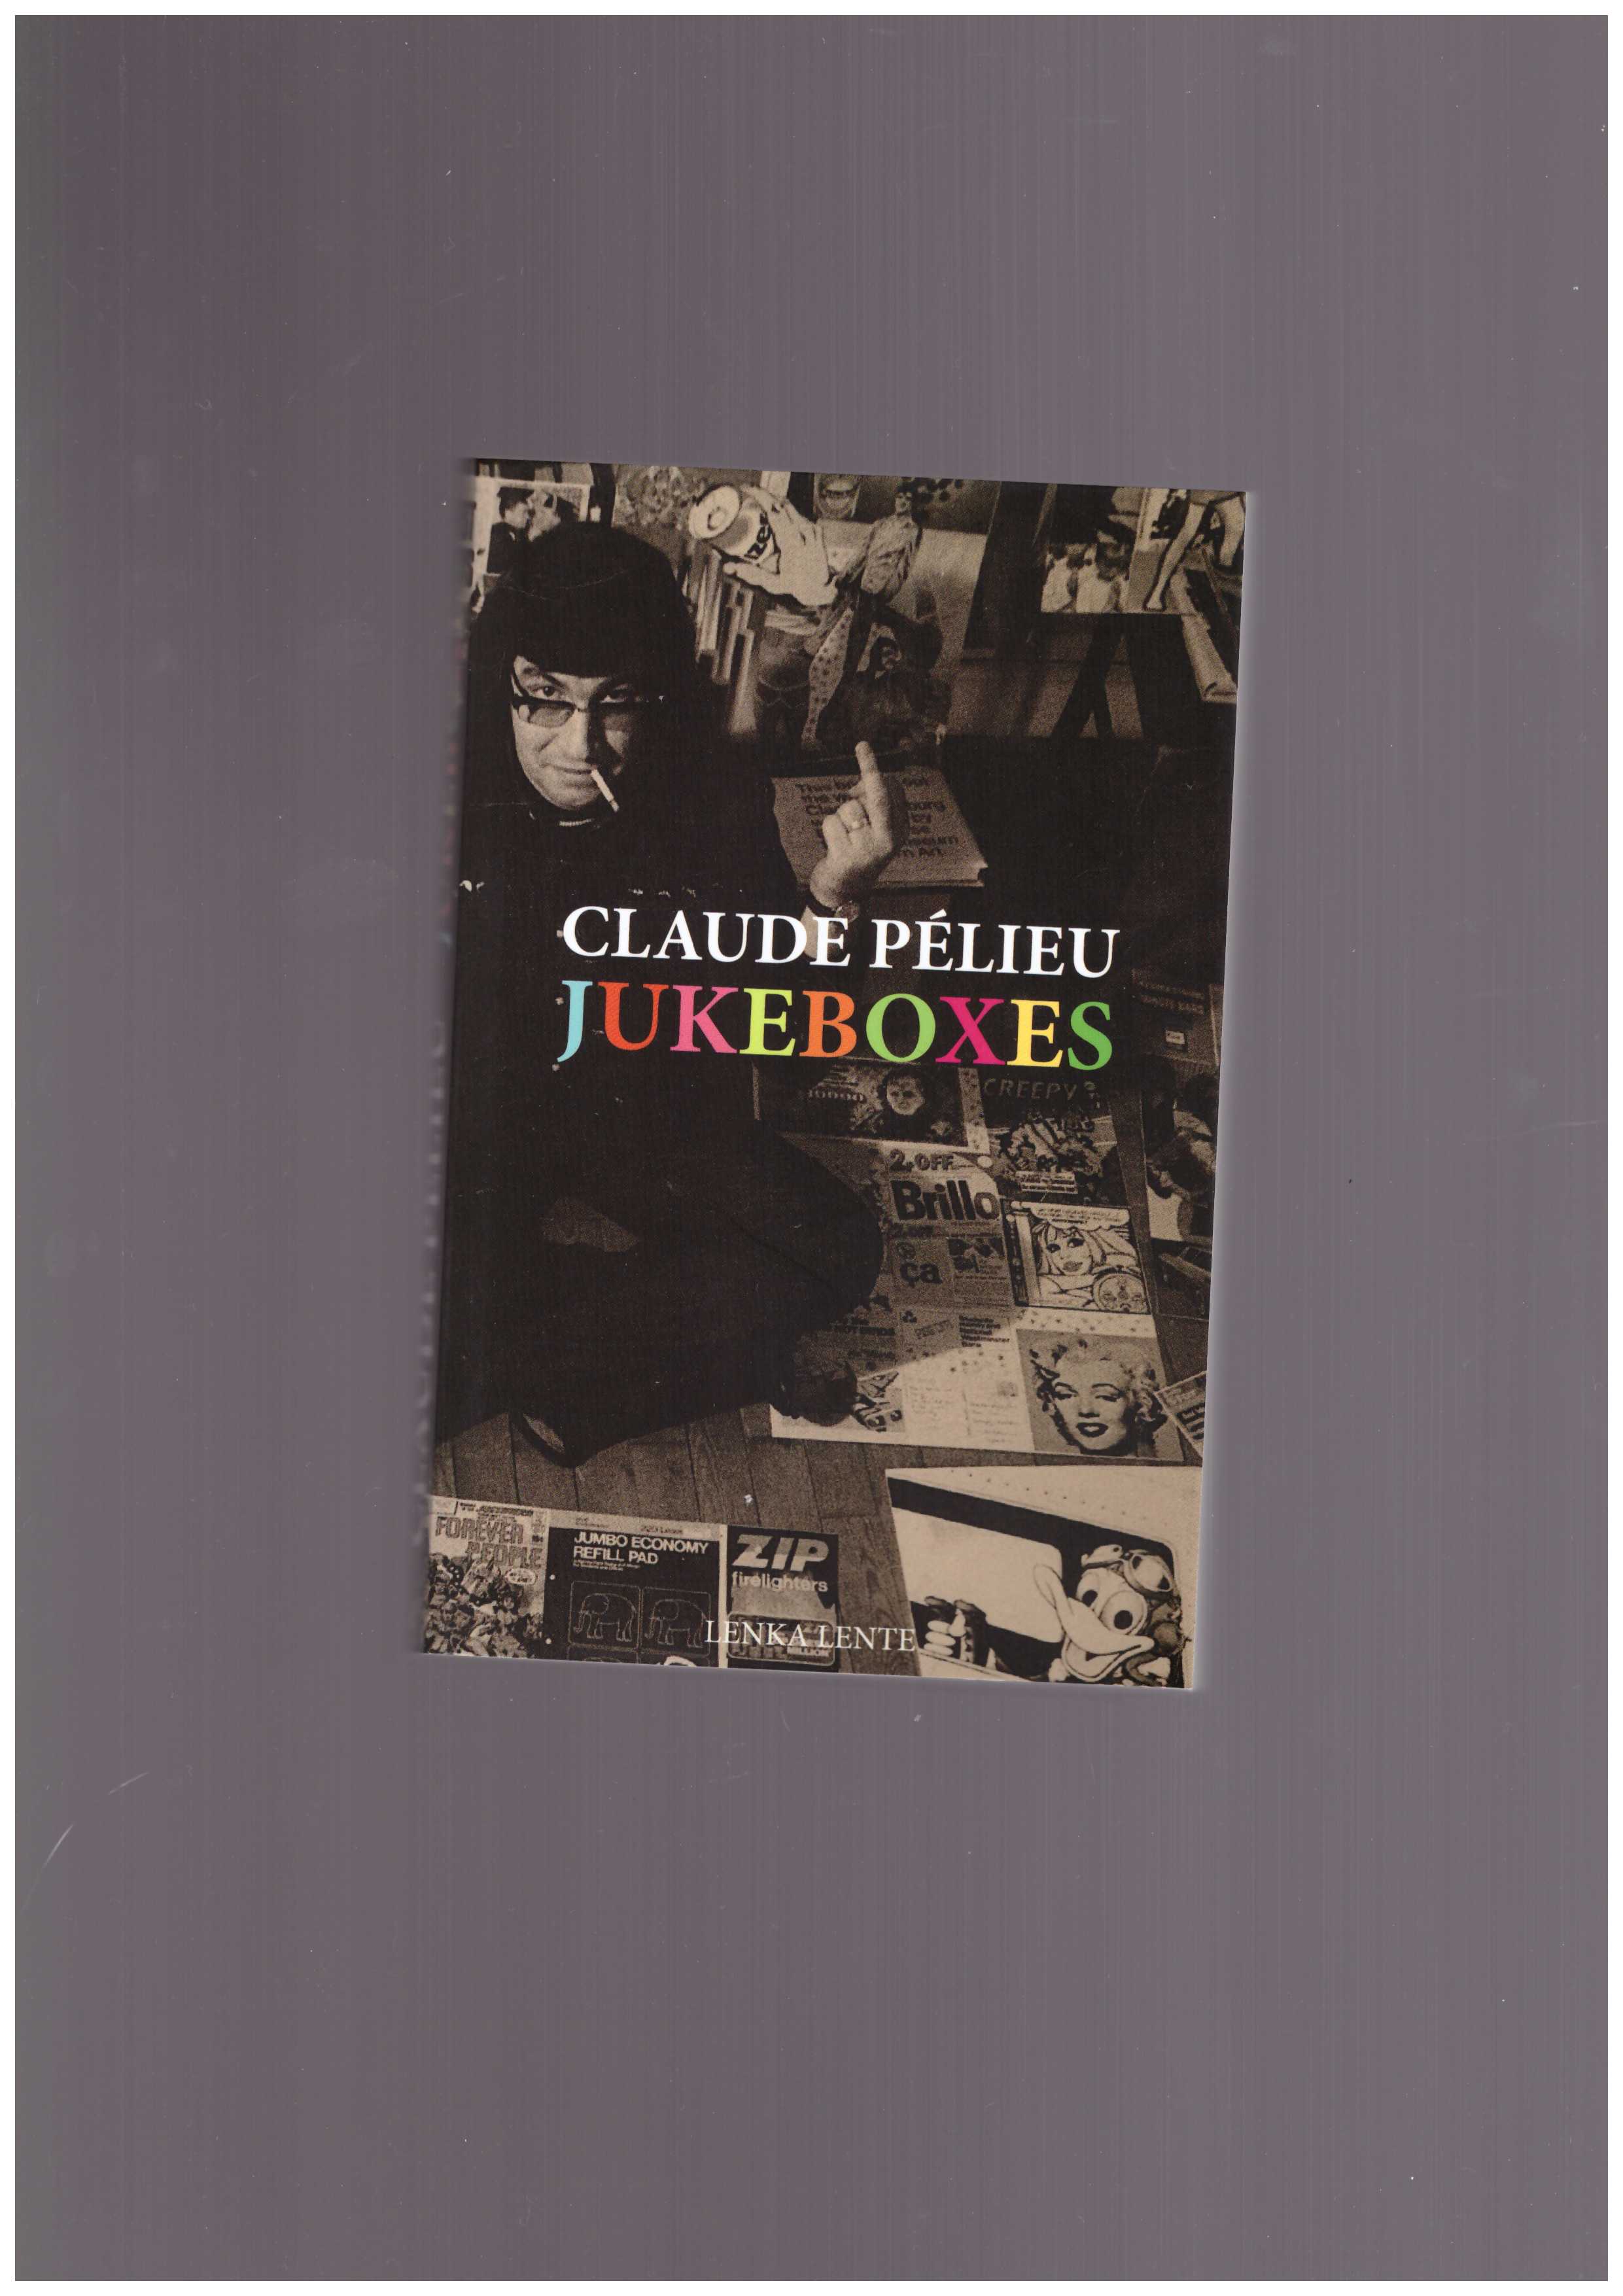 PELIEU, Claude - Jukeboxes